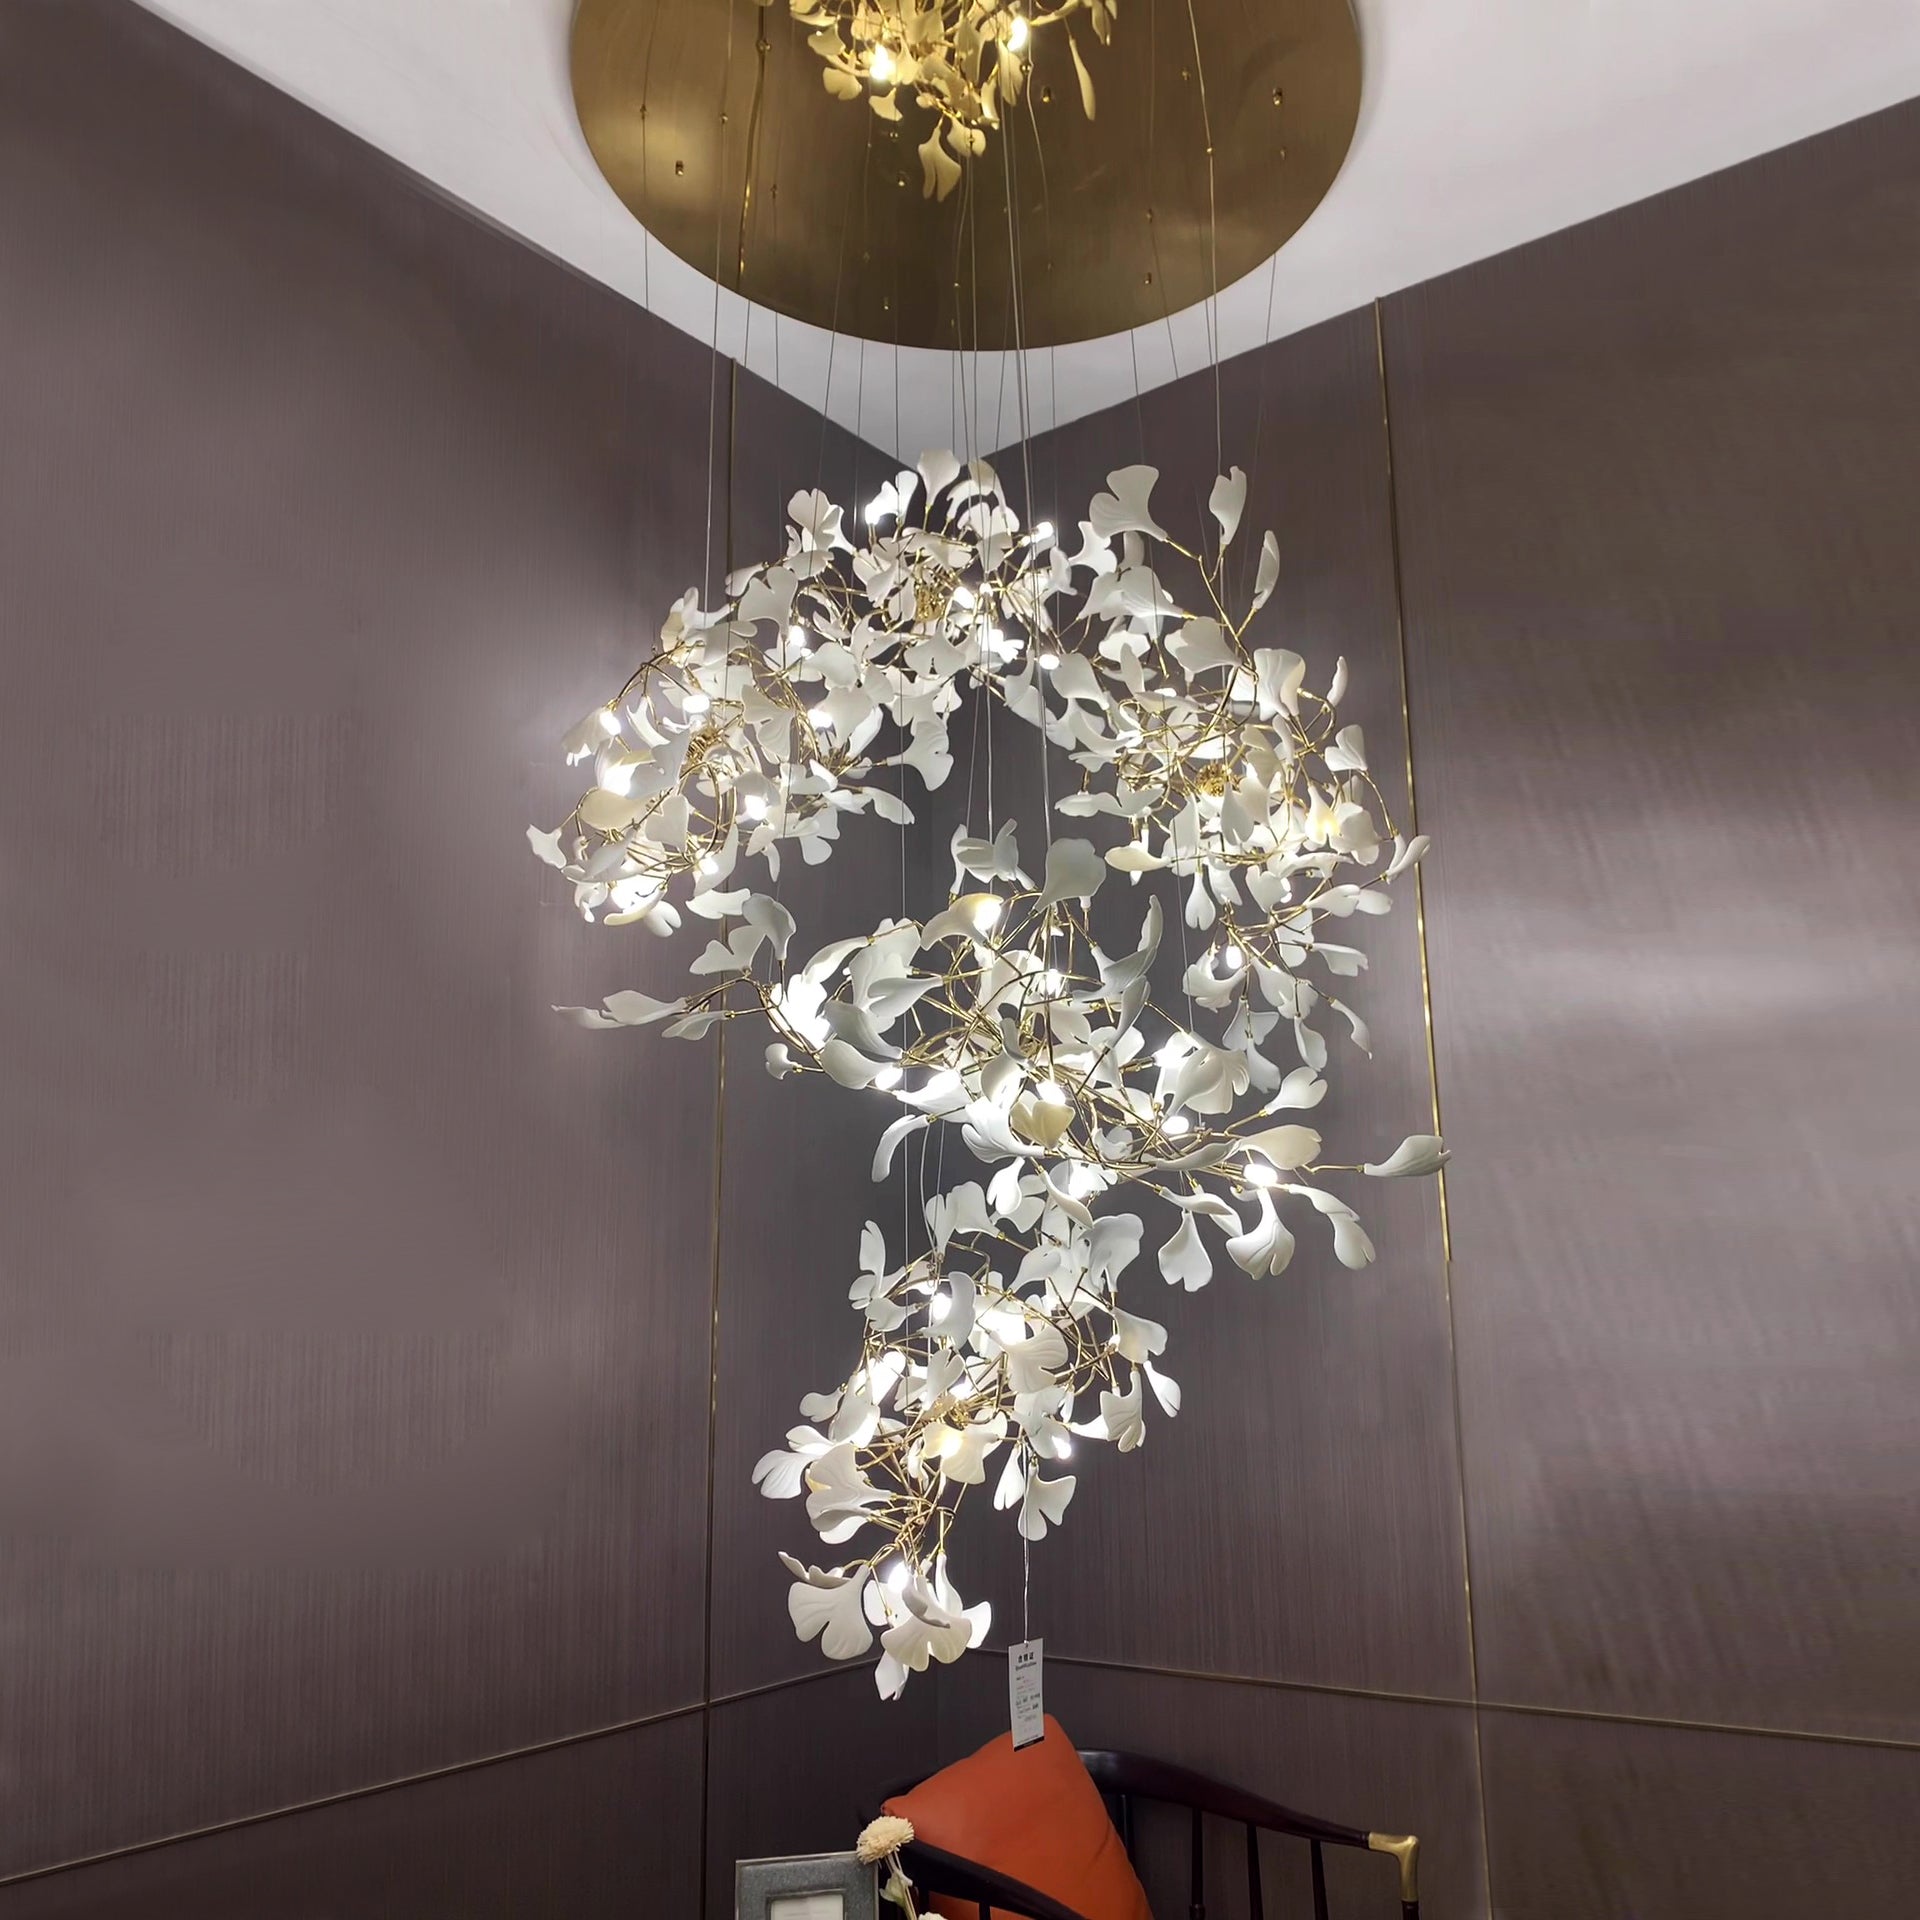 Gingko Leaf Flower Ceramics Chandelier For Foyer / Staircase /Hallway Chandeliers Kevinstudiolives A Style D23.6" *H70.8" Warm Light 